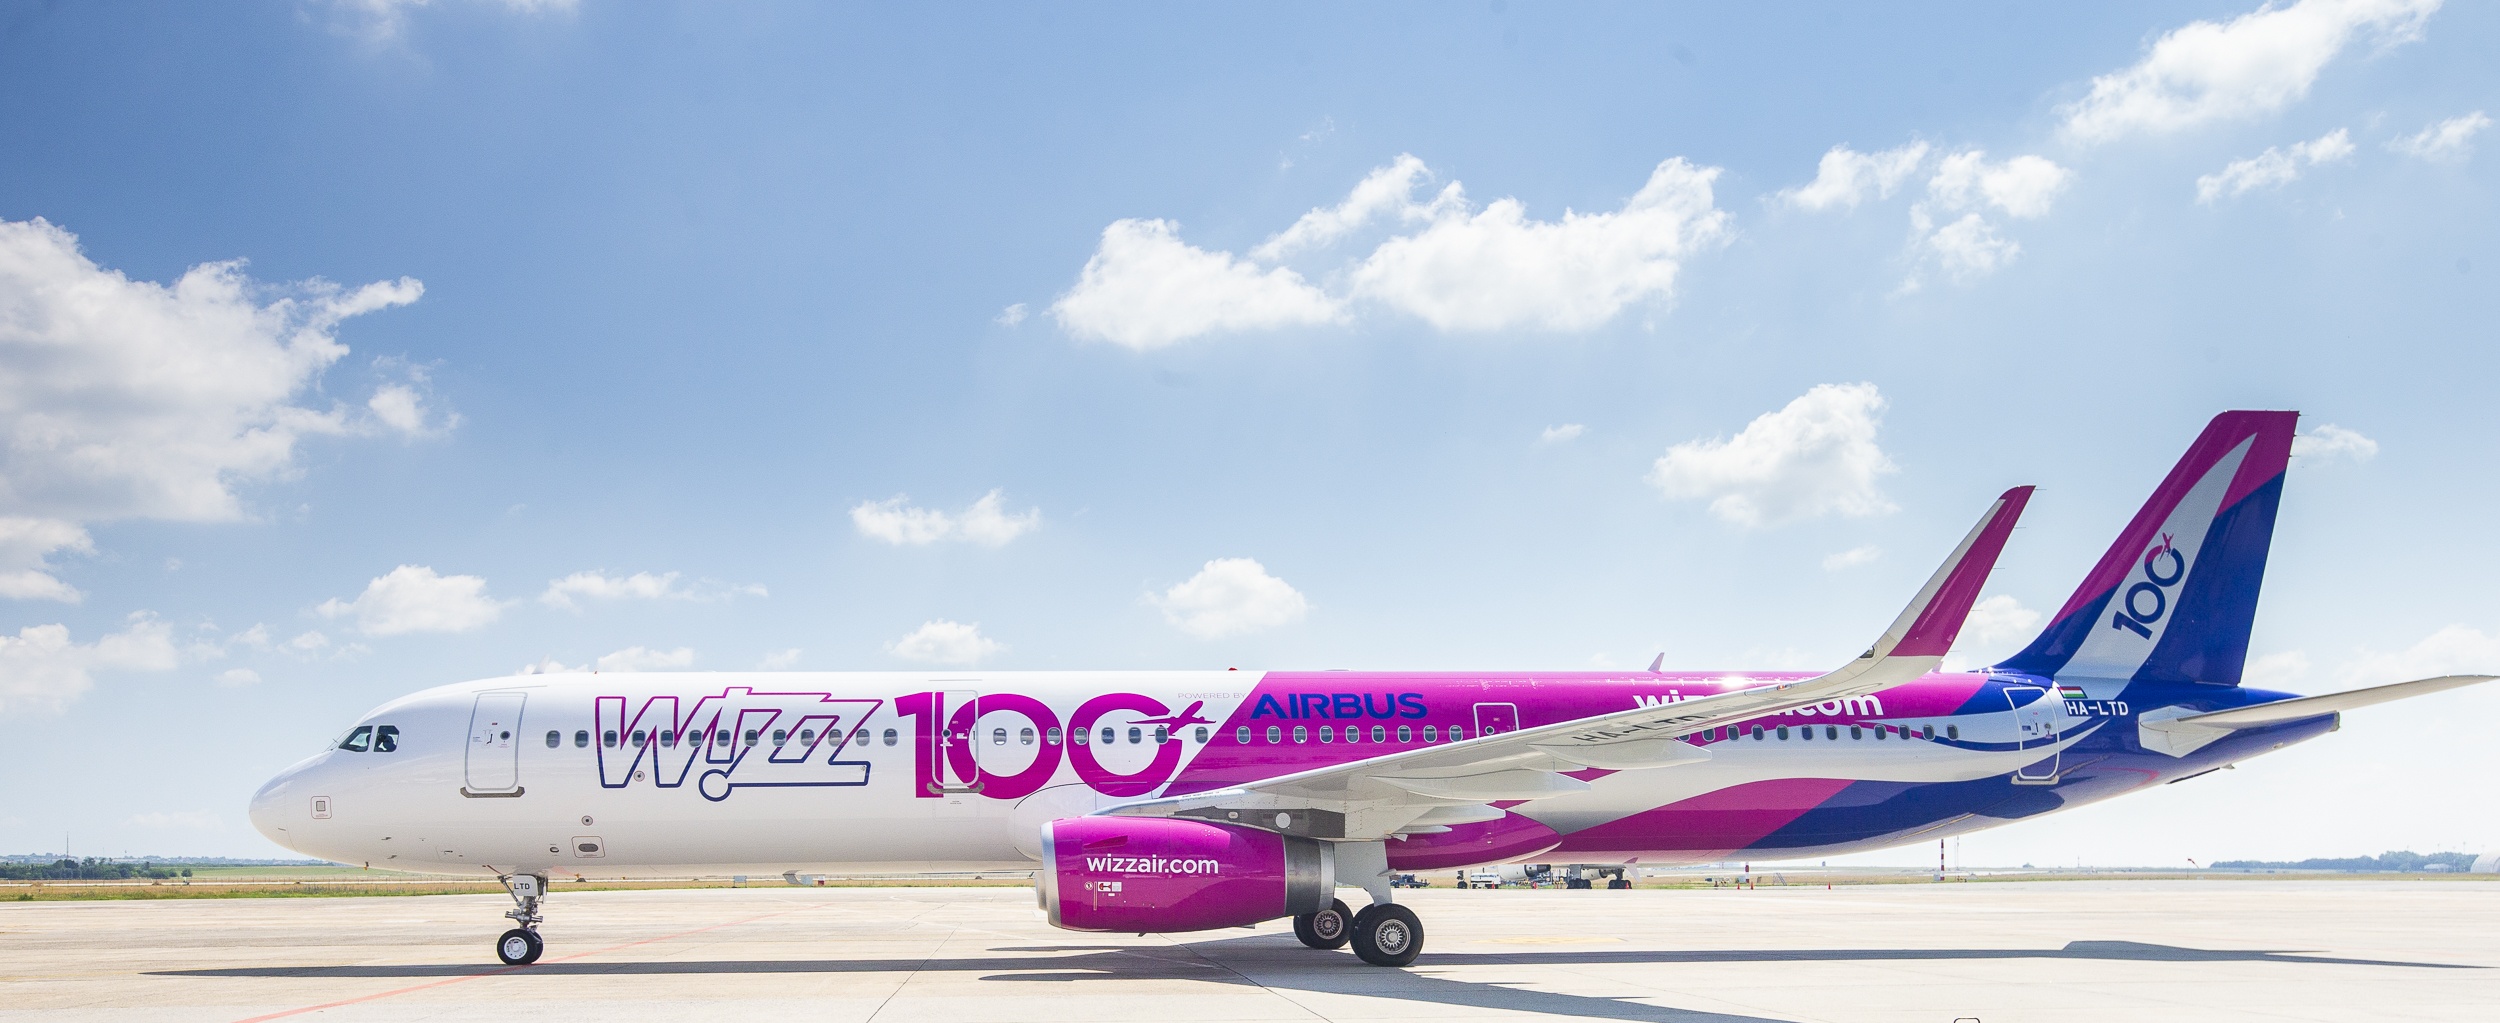 Megérkezett a Wizz Air-flotta 100. repülőgépe